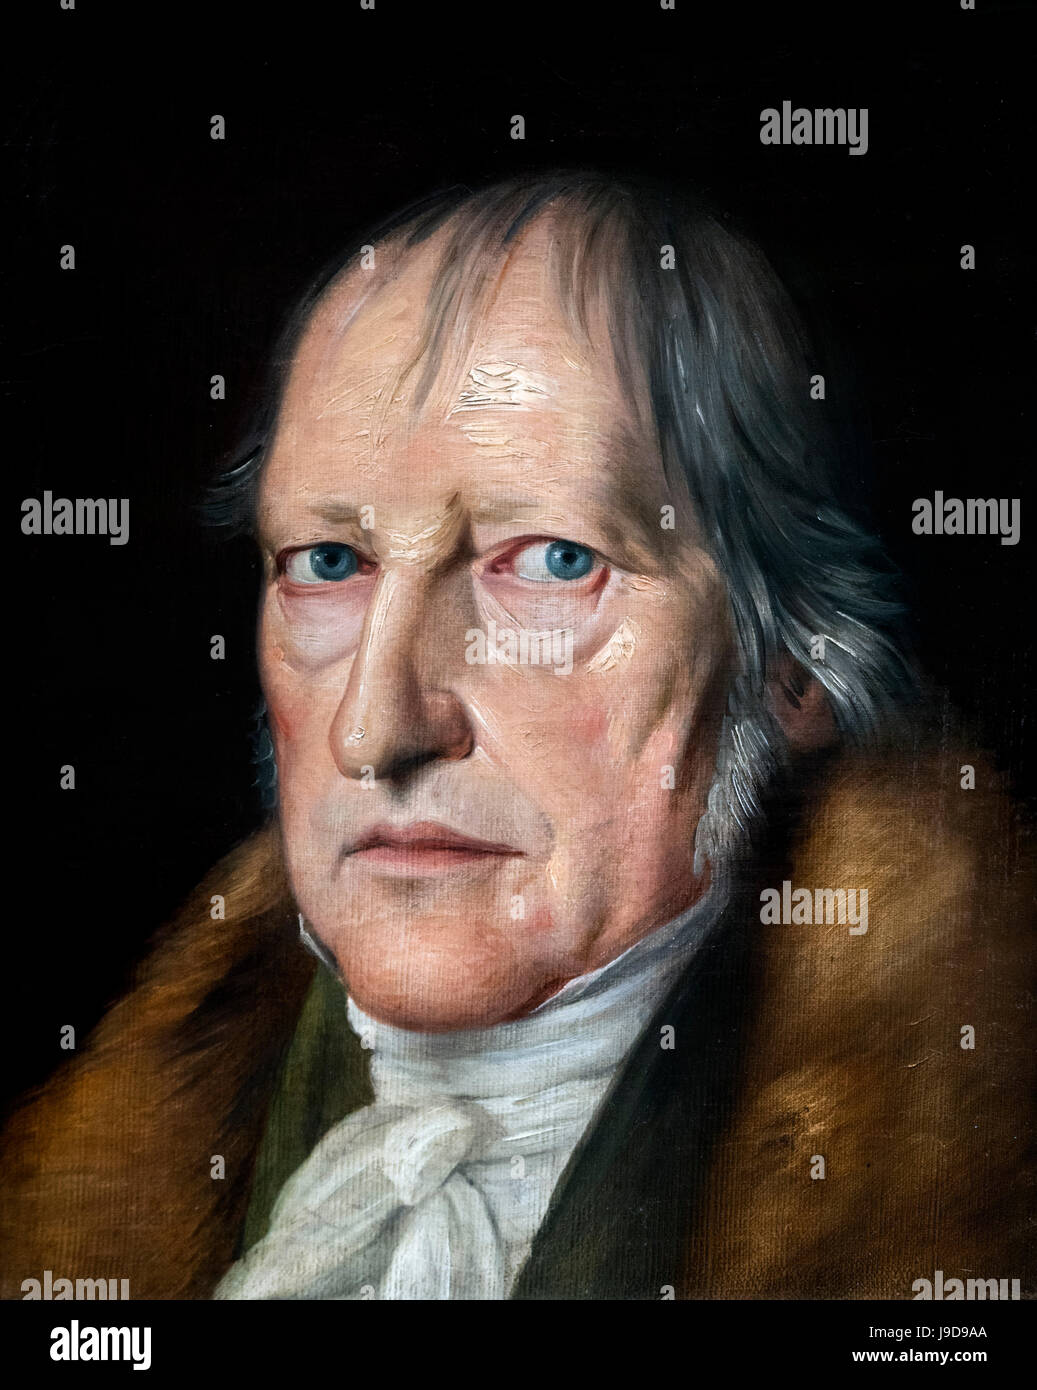 Hegel. Portrait du philosophe allemand, Georg Wilhelm Friedrich Hegel (1770-1831) par Jacob Schlessinger, huile sur toile, 1831. Banque D'Images